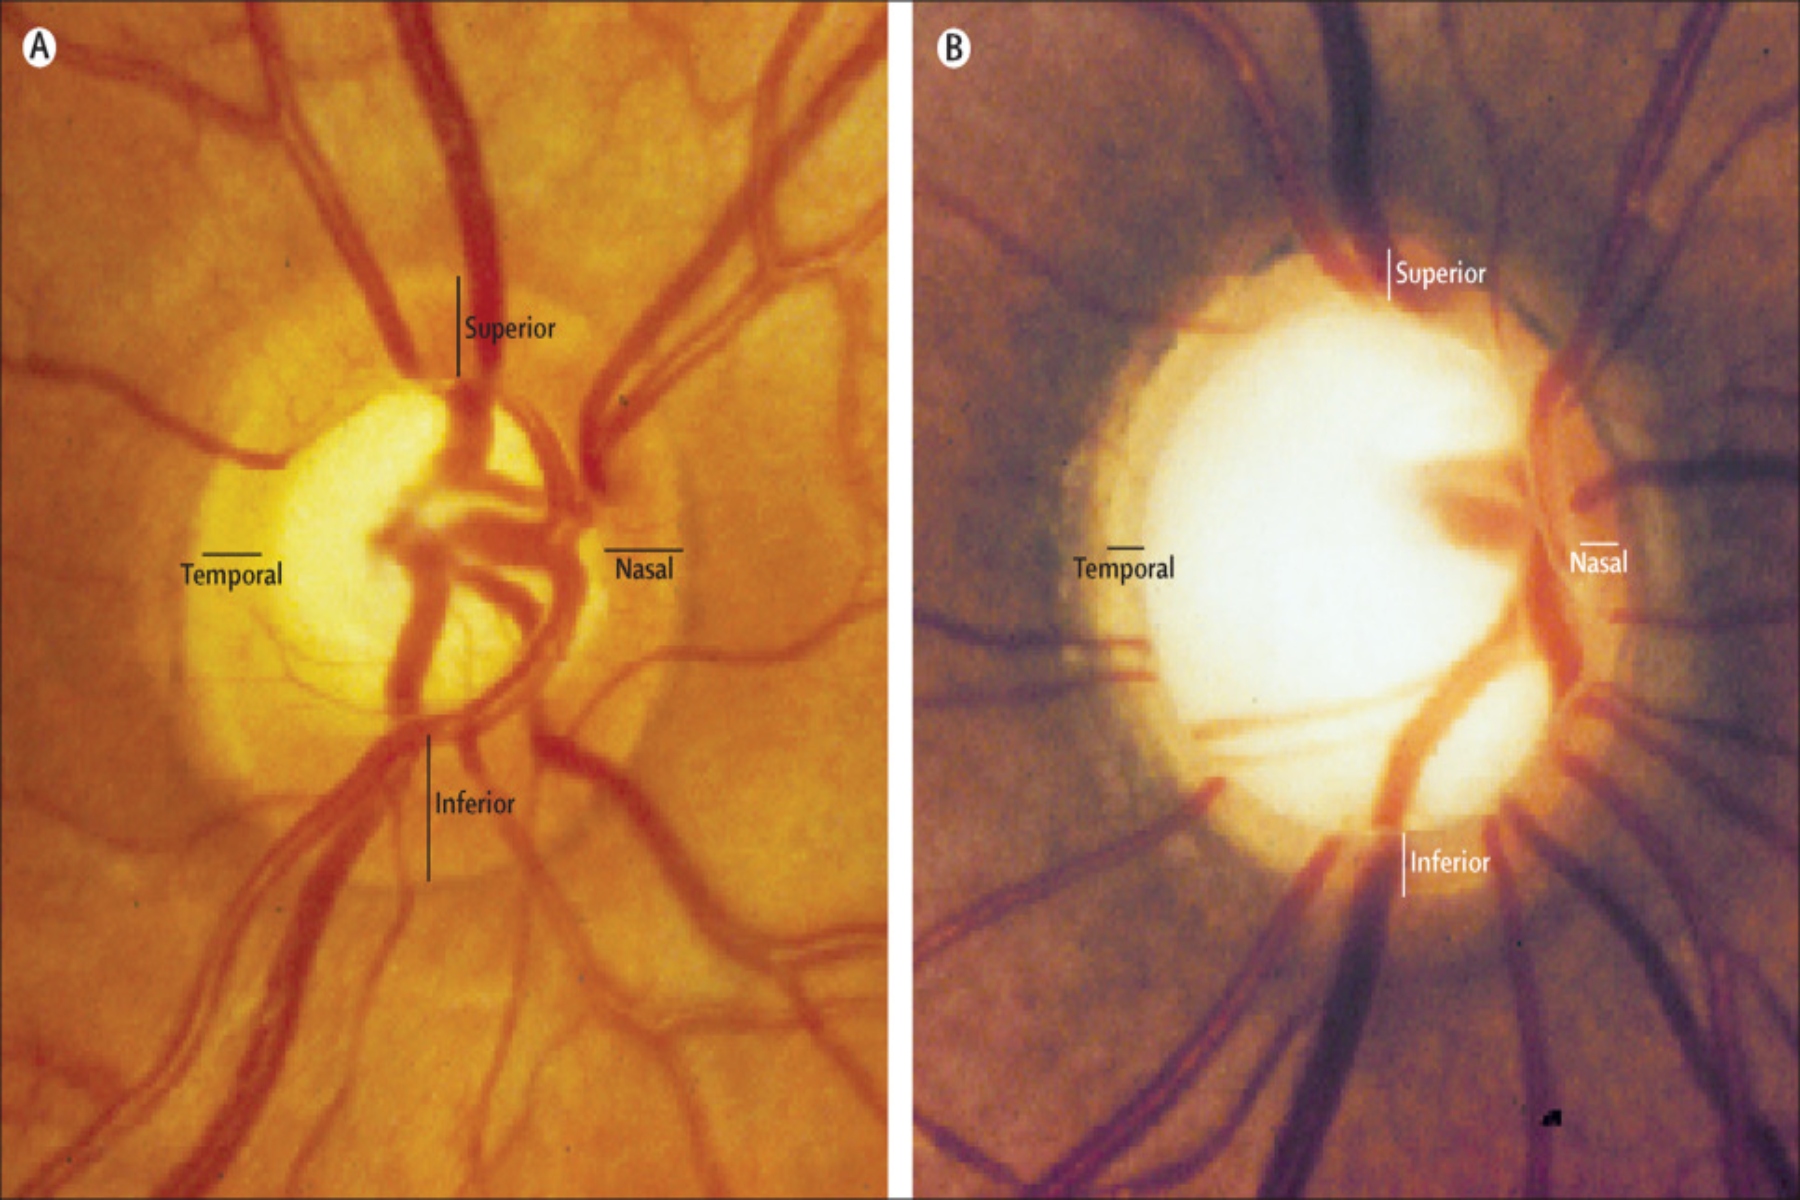 Γλαύκωμα όραση: Το γλαύκωμα μπορεί να οδηγήσει σε απώλεια όρασης! Γνωρίστε τα σημάδια για έγκαιρη διάγνωση και θεραπεία